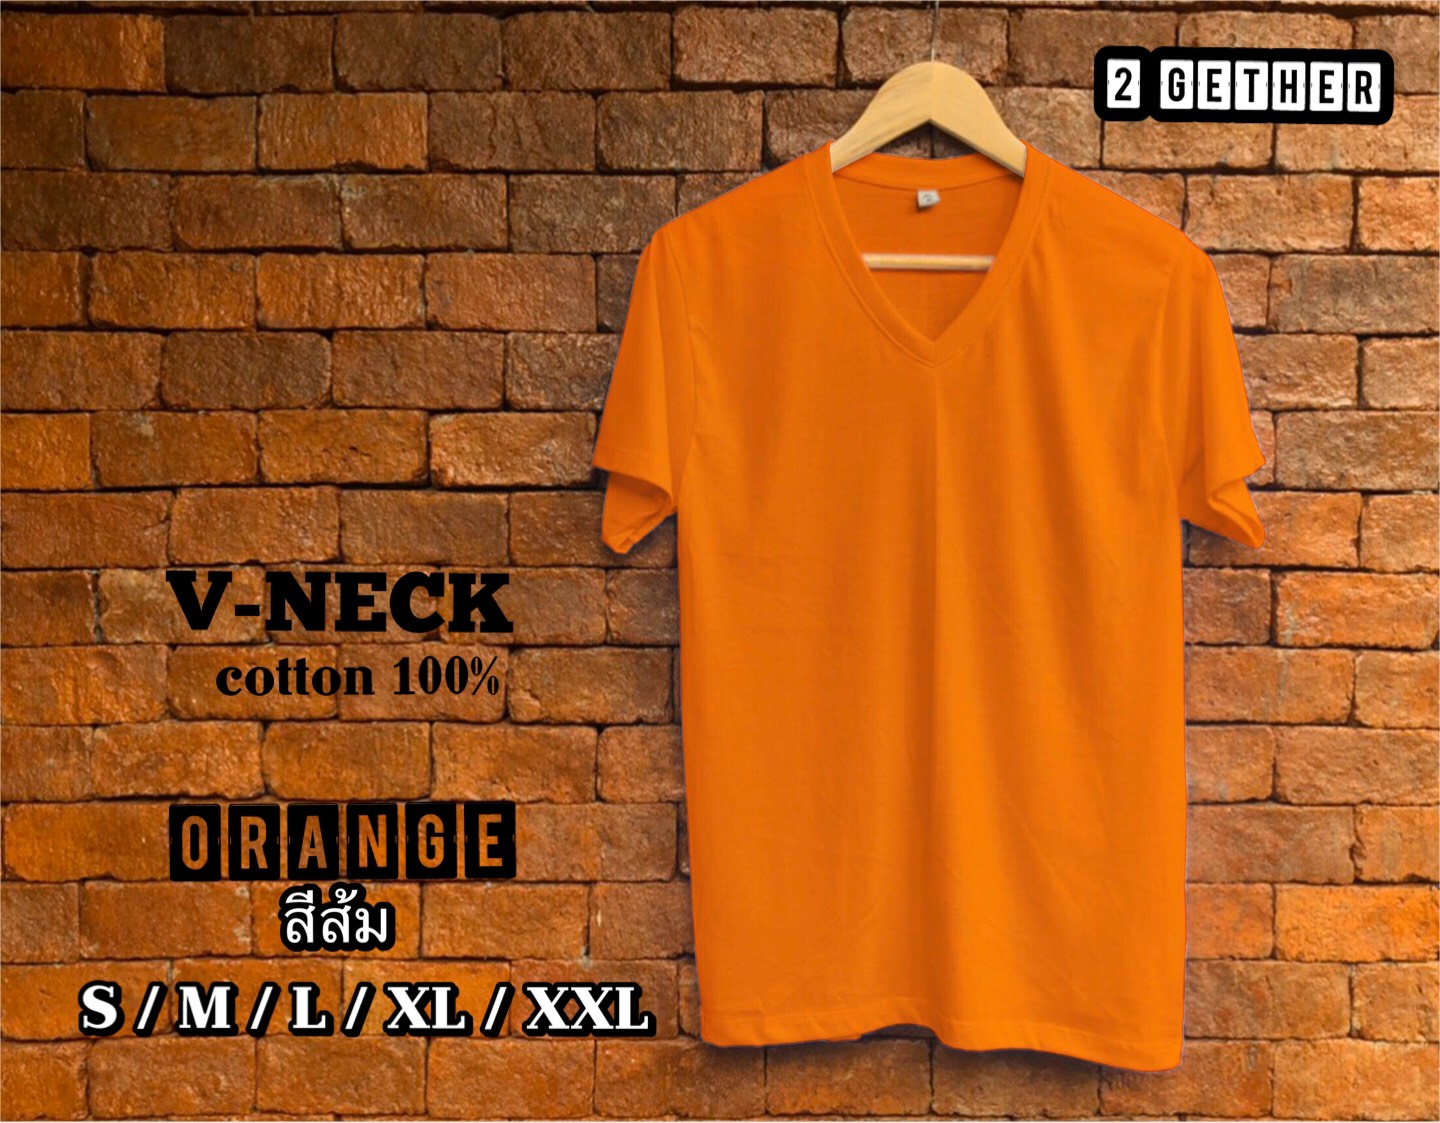 2 GETHER T-SHIRT เสื้อยืด คอวี แขนสั้น สีพื้น orange  (สีส้ม) cotton 100%